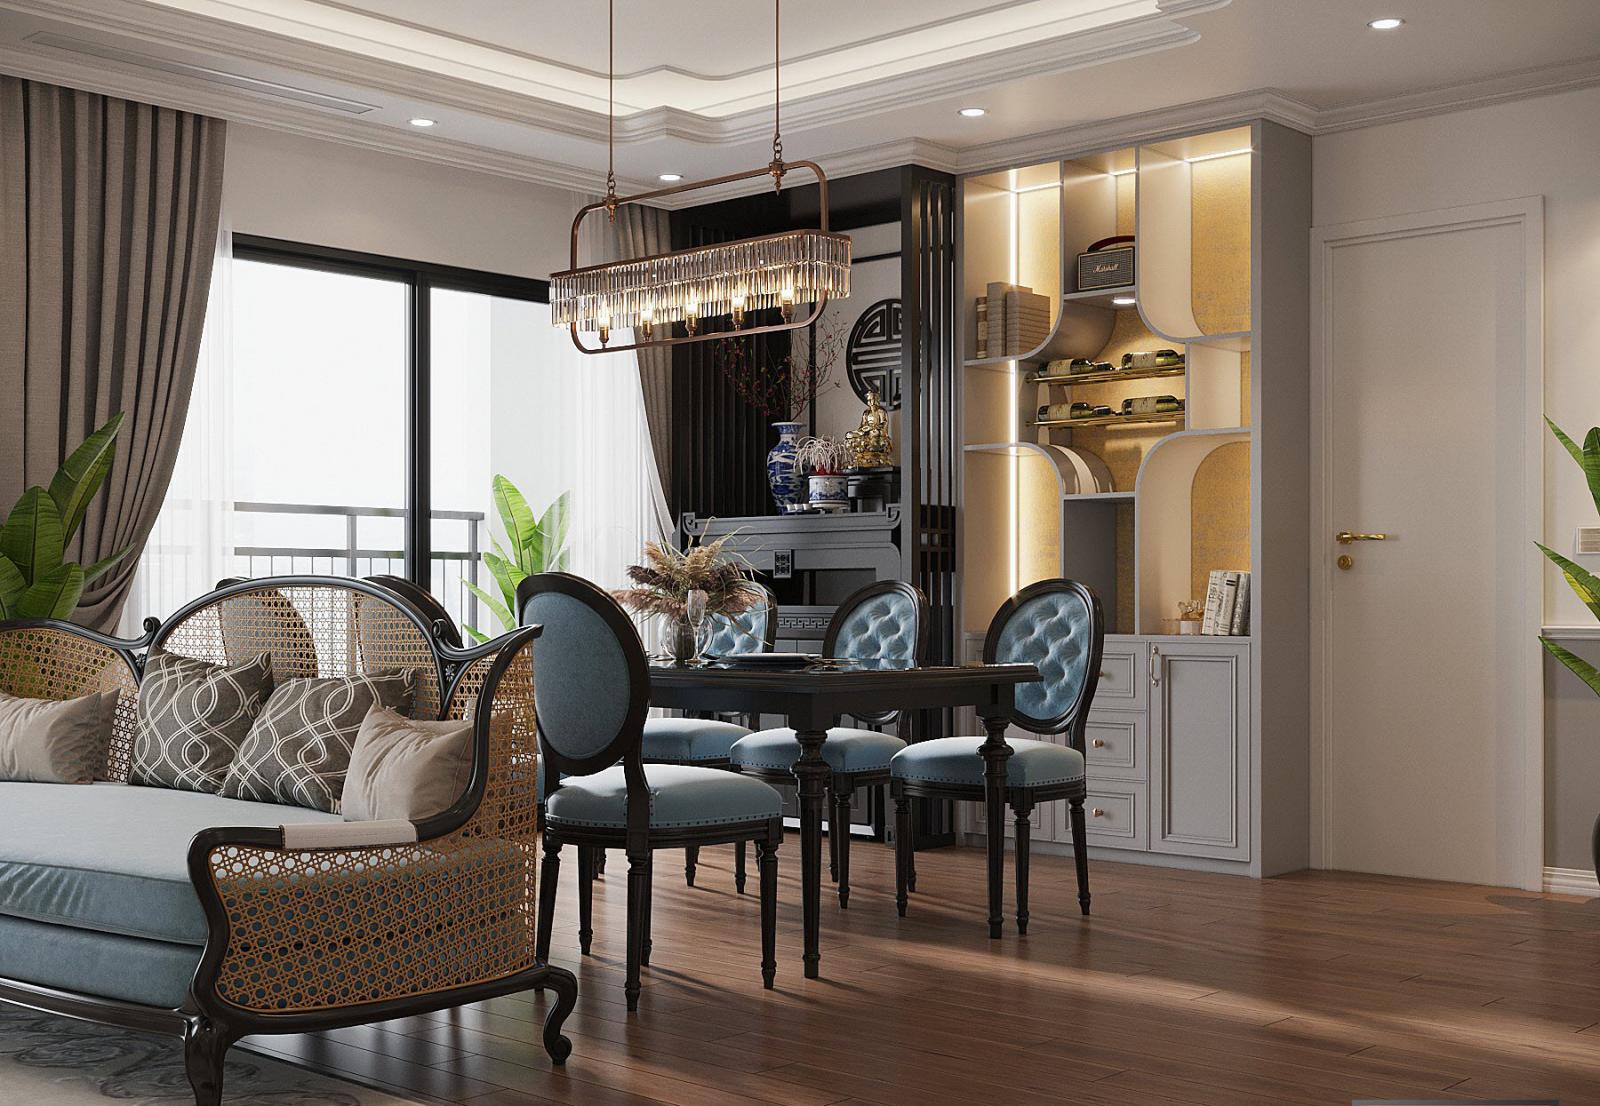 Phòng ăn căn hộ 150m2 có cửa kính cao rộng mở ra ban công thoáng đãng, ngập tràn ánh sáng tự nhiên. Đệm ghế sofa và ghế ăn cùng tông xanh dương nhẹ nhàng, giúp kết nối liền mạch giữa hai không gian chức năng.